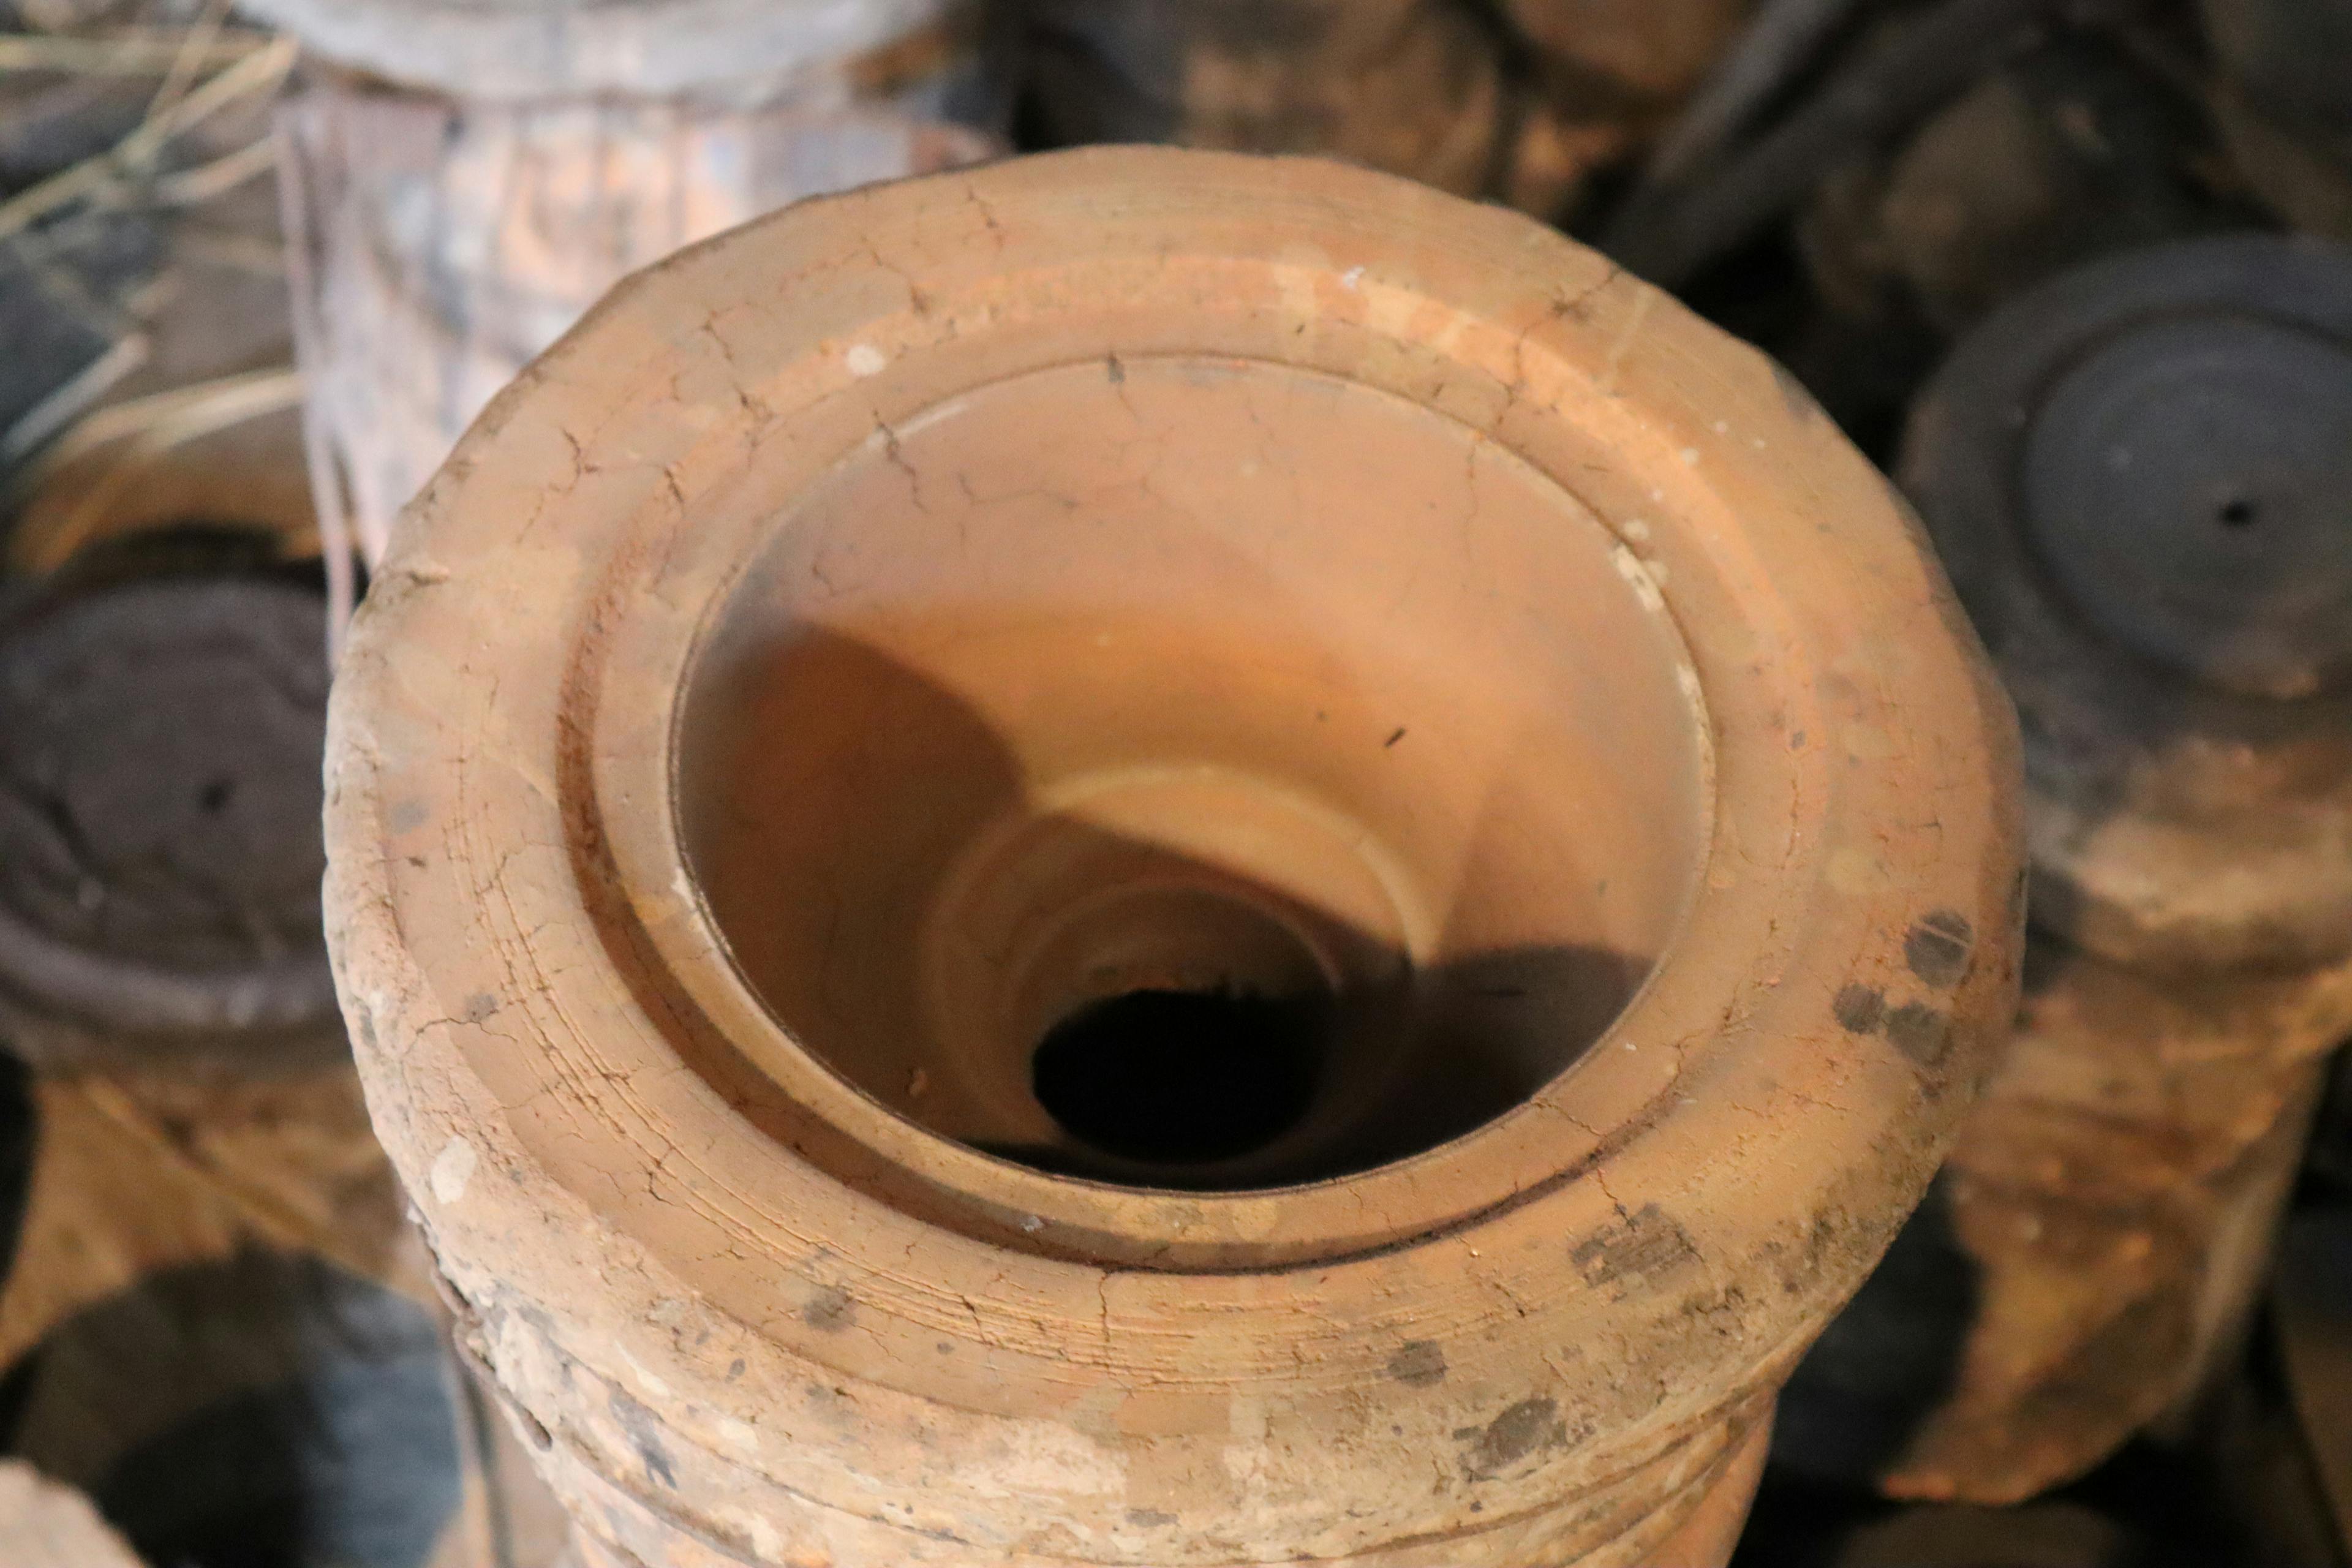 及鉄鋳造所宝鉄堂の南部鉄瓶は伝統的製法の焼型で伝統を守り作り続けます。